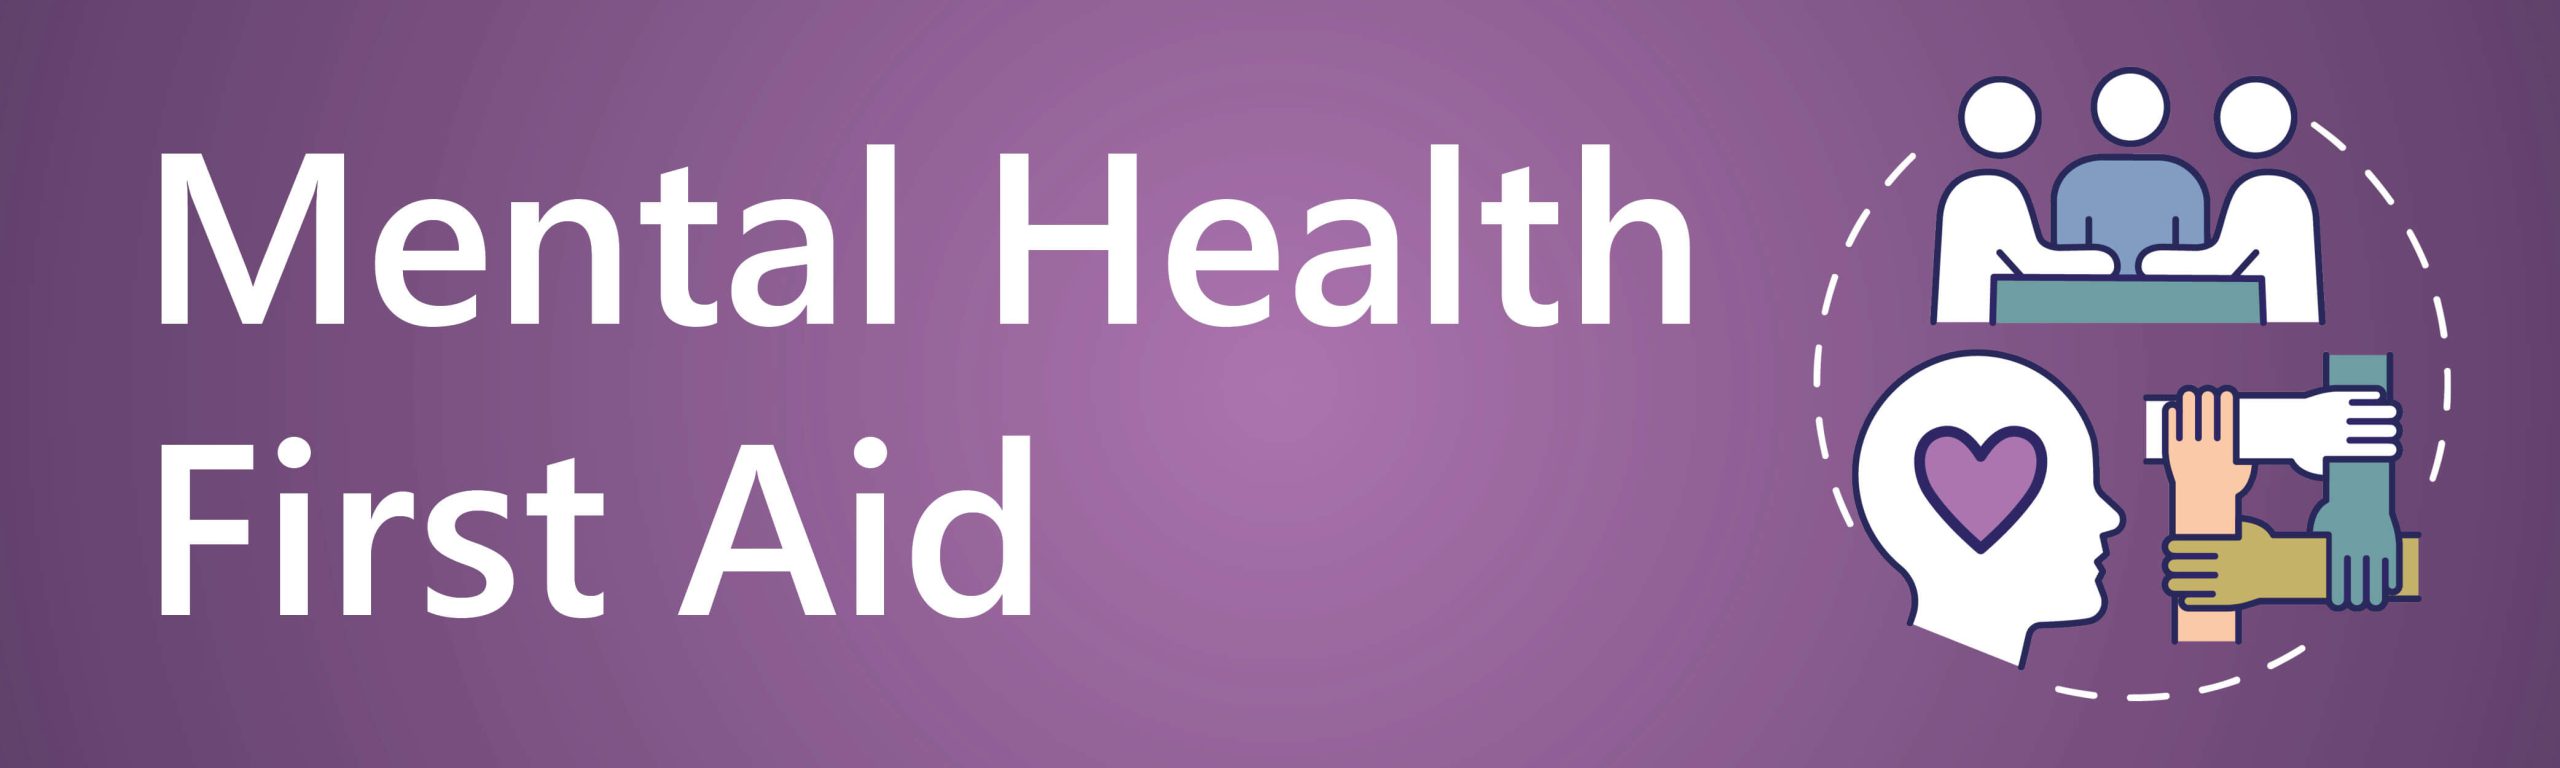 Mental Health First Aid Banner